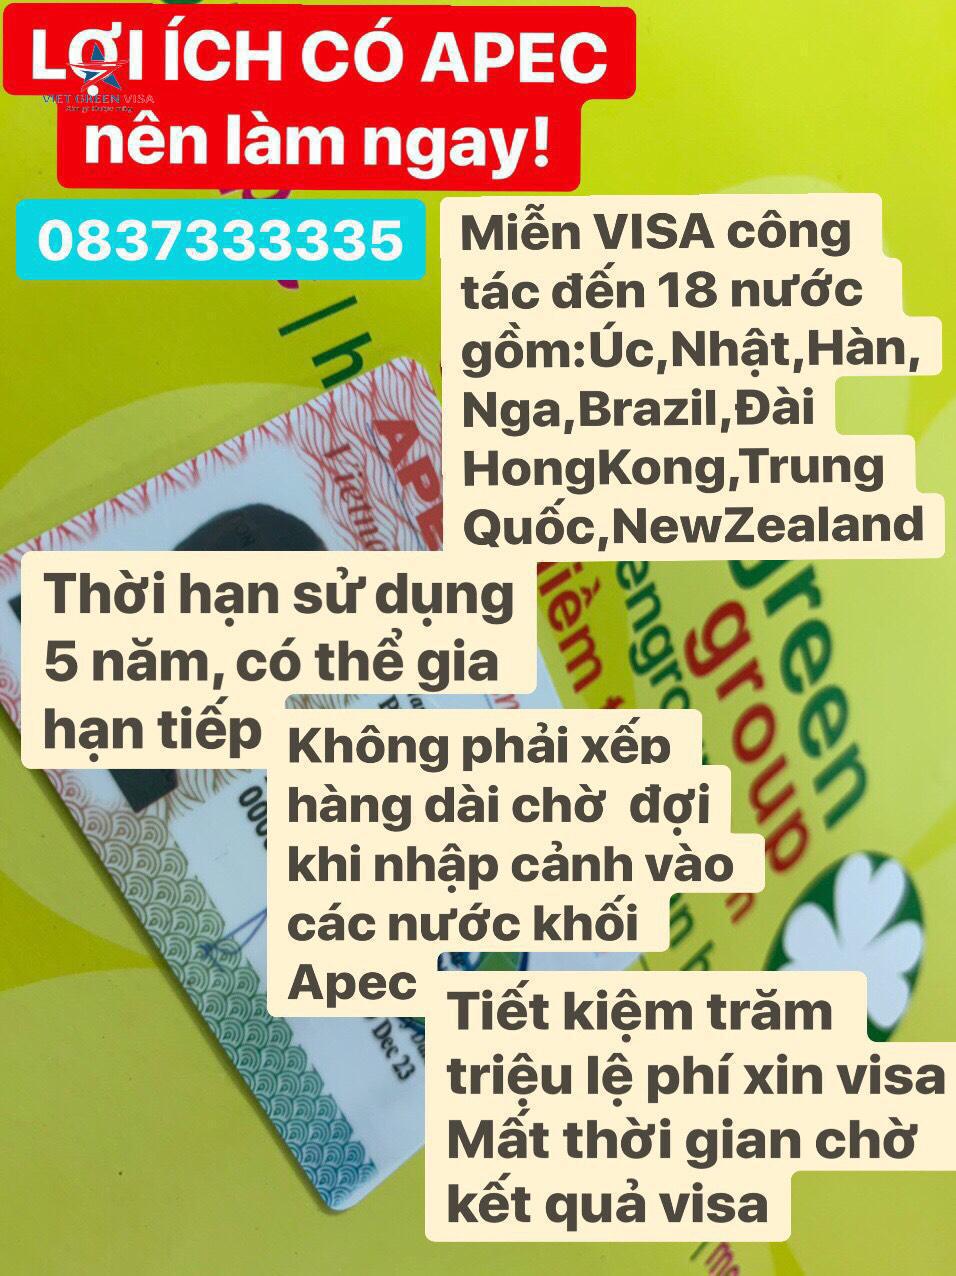 Dịch vụ làm thẻ Apec tại Lào Cai, Tư vấn thẻ tại Lào Cai